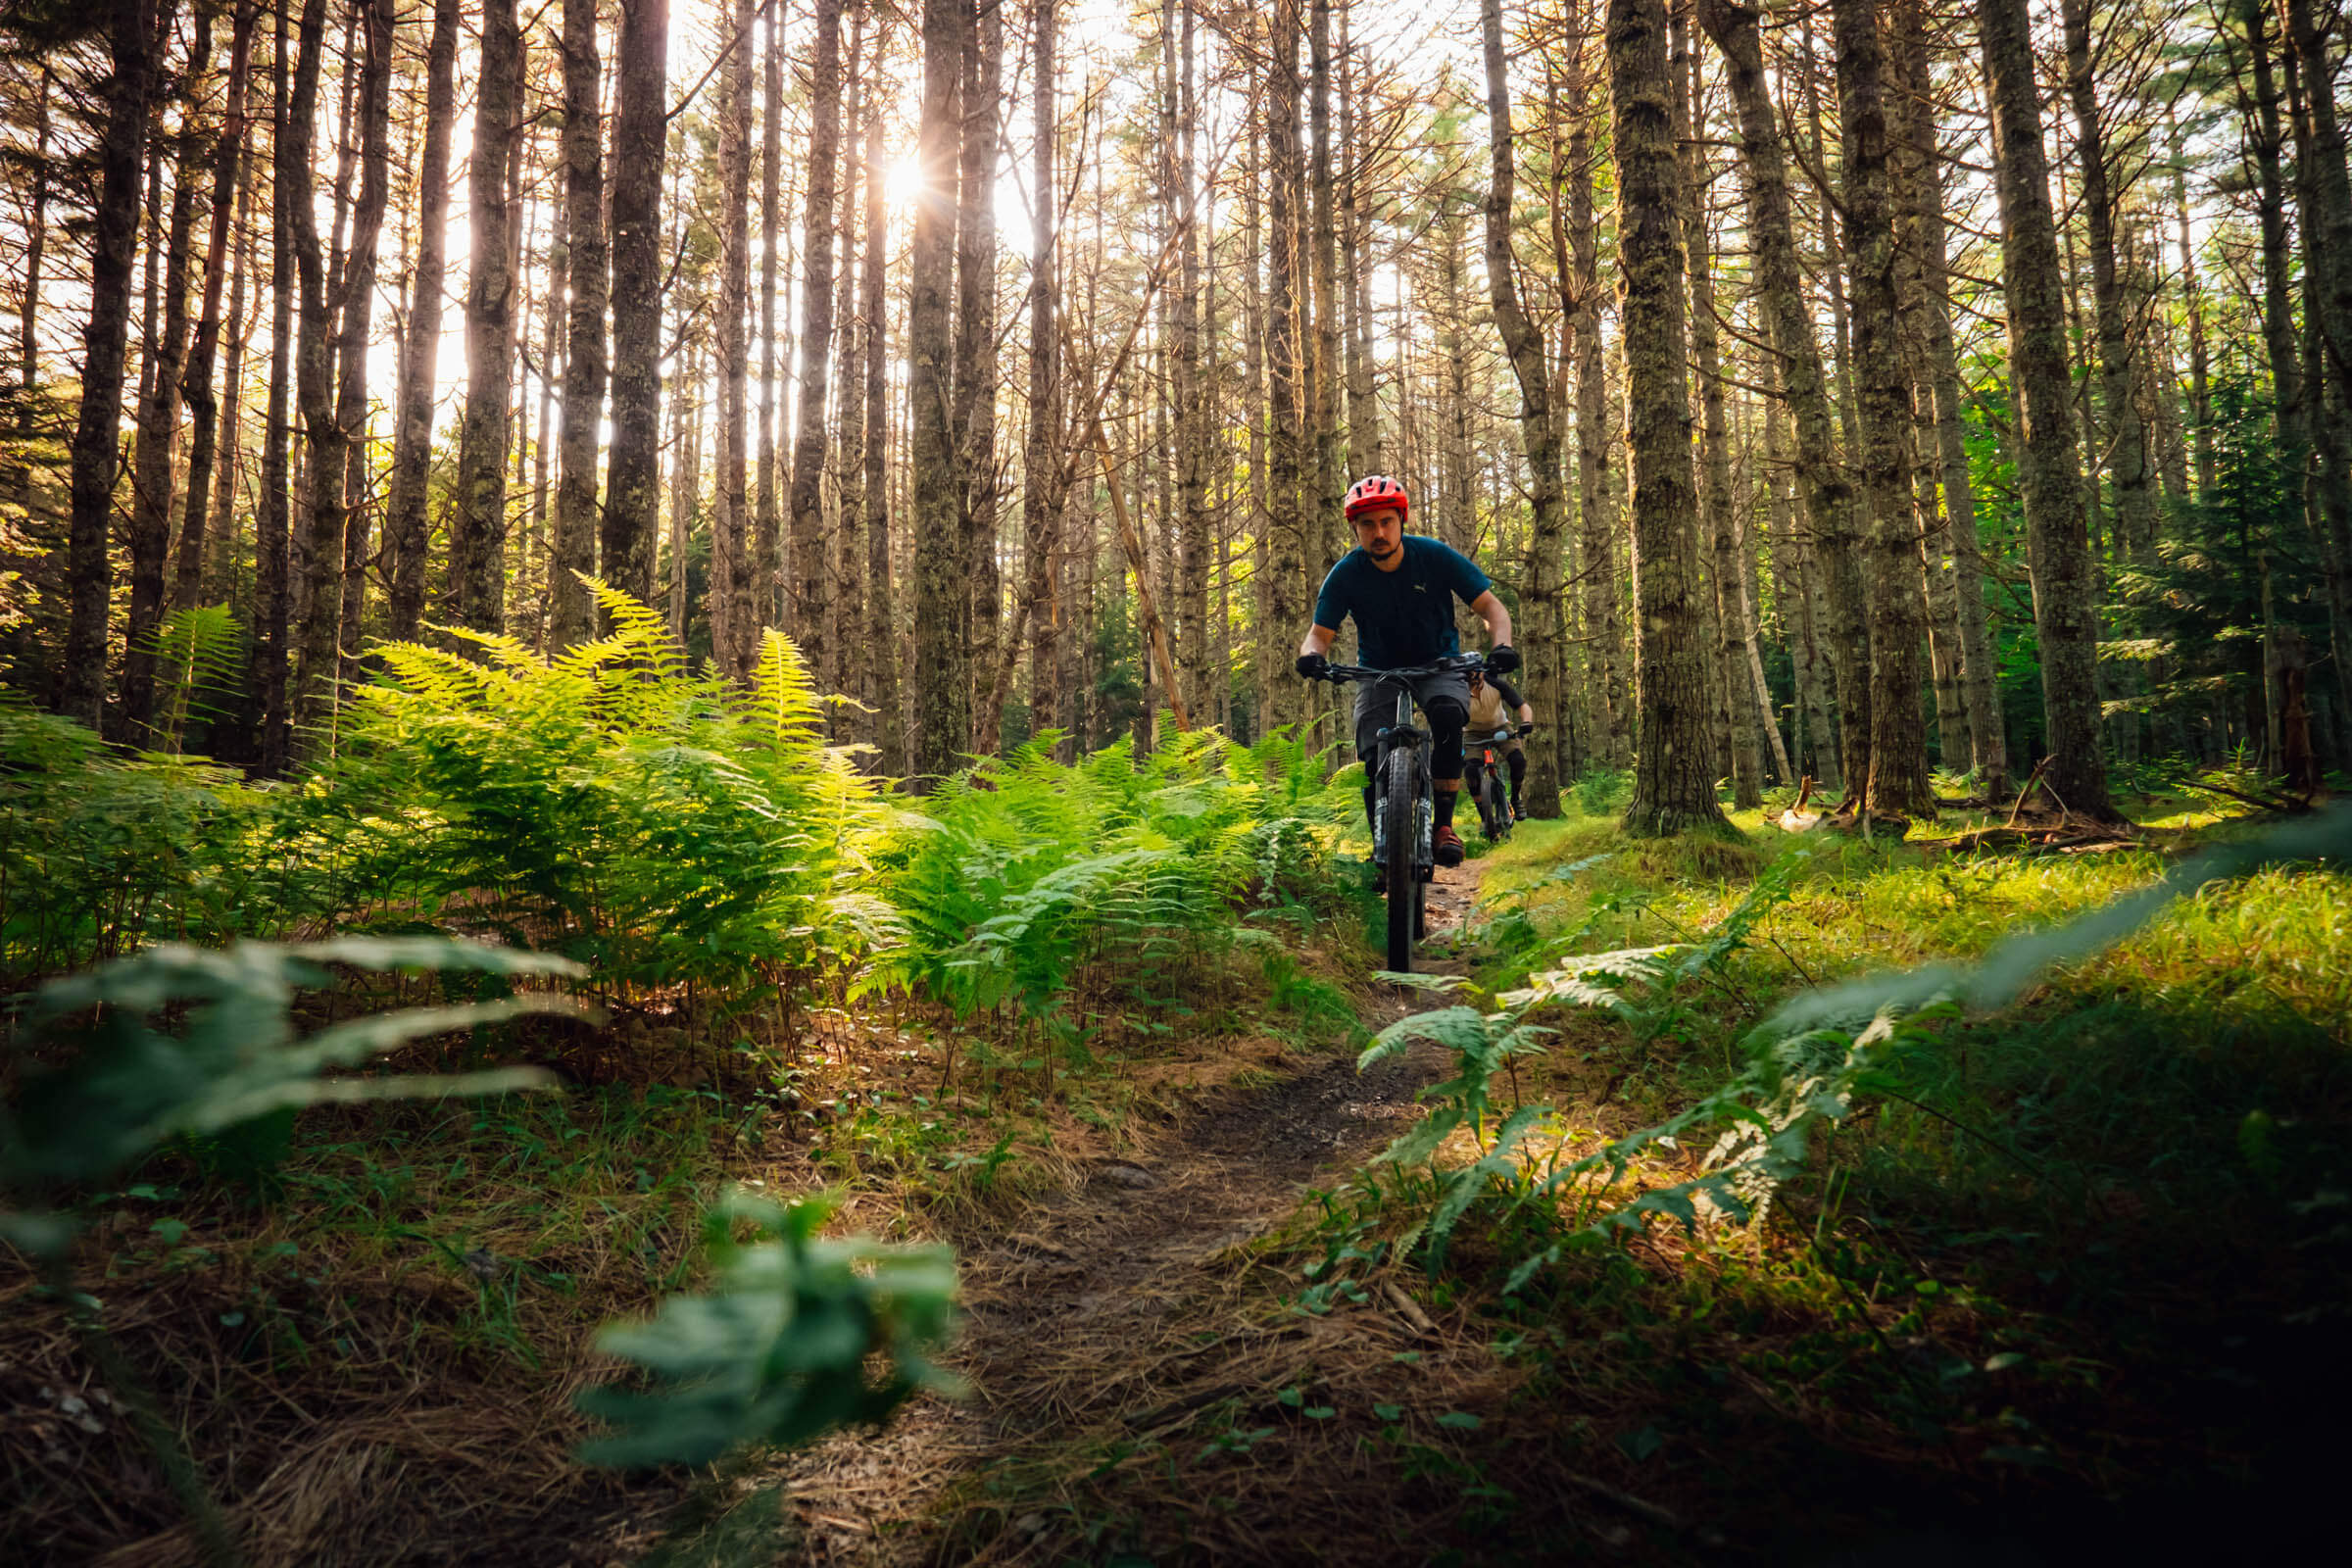 5 Places for Mountain Biking in Nova Scotia